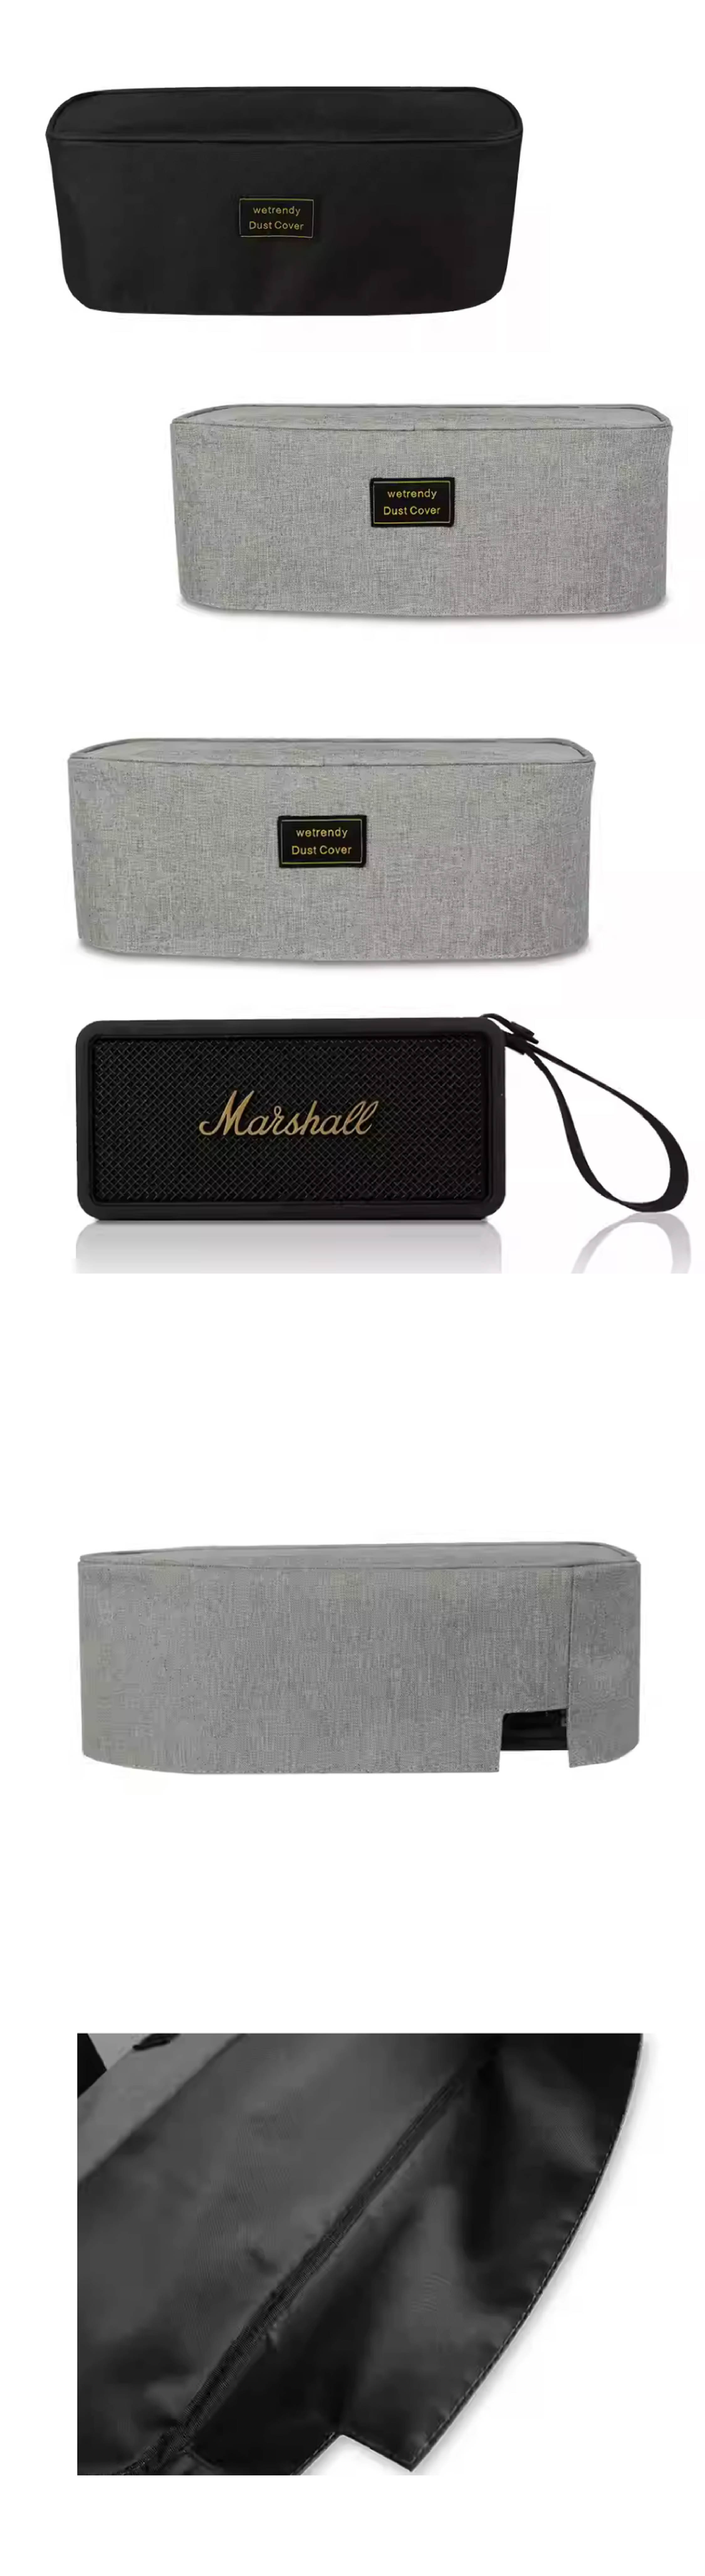 Marshall Middleton Bluetooth speaker dust cover